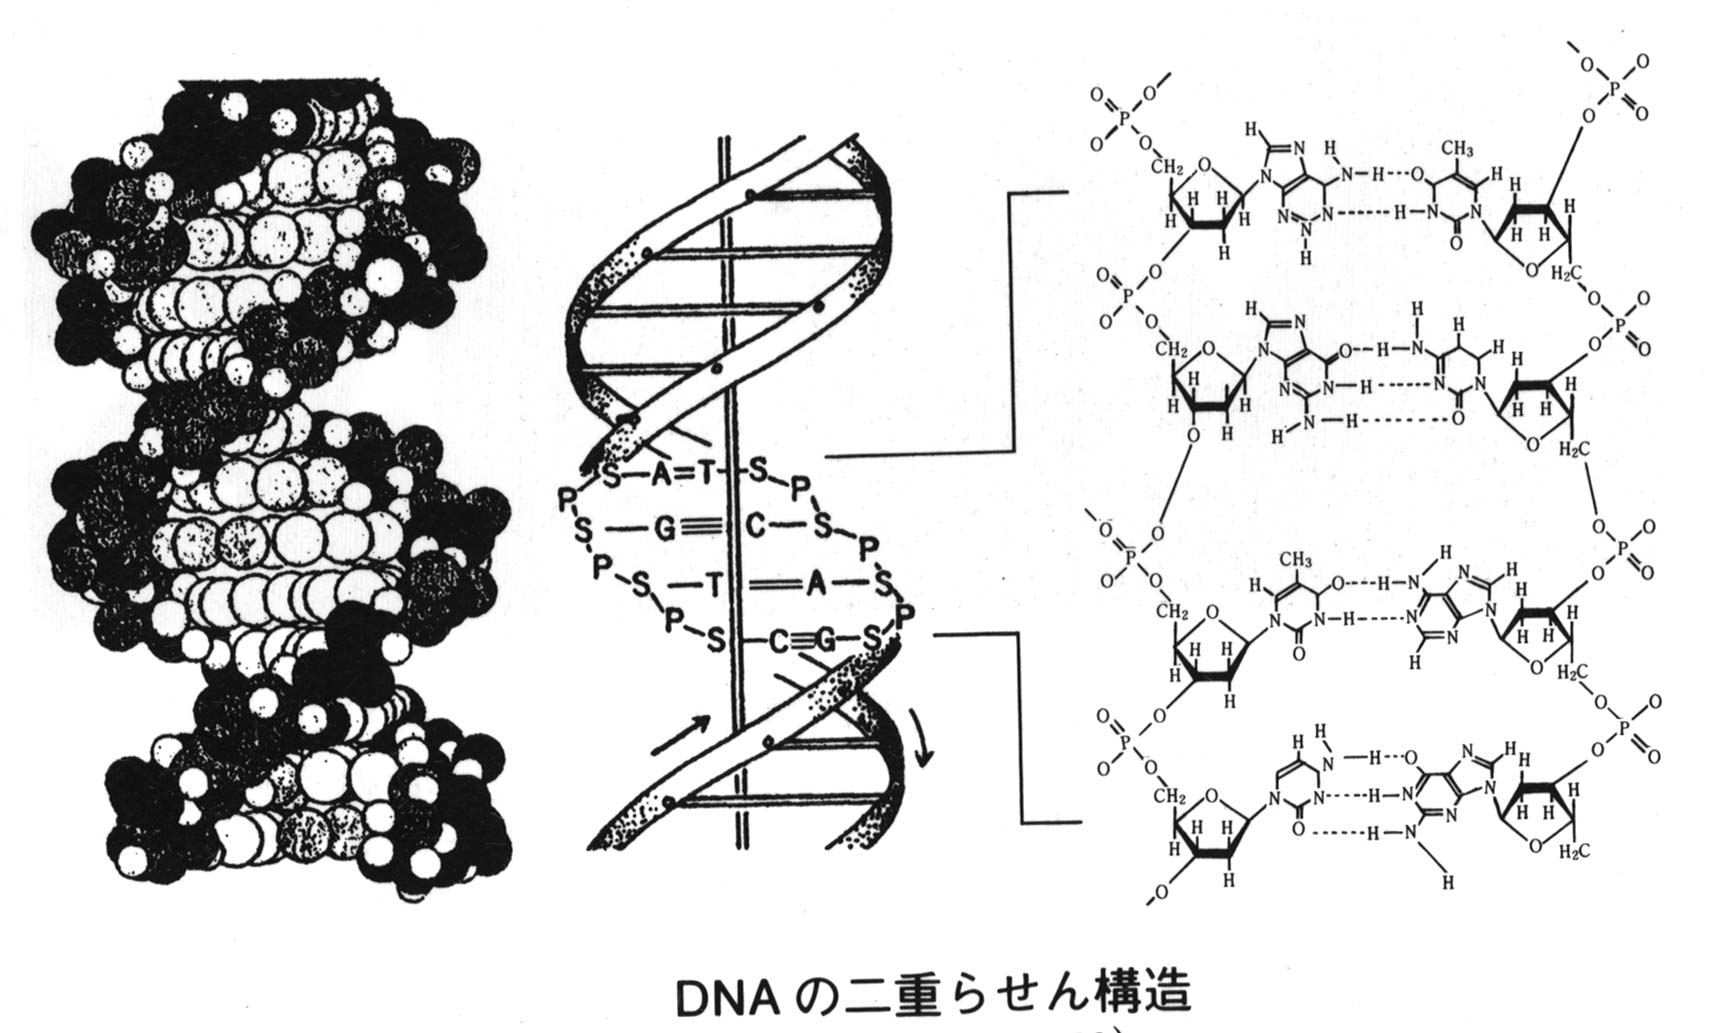 DNAの発見